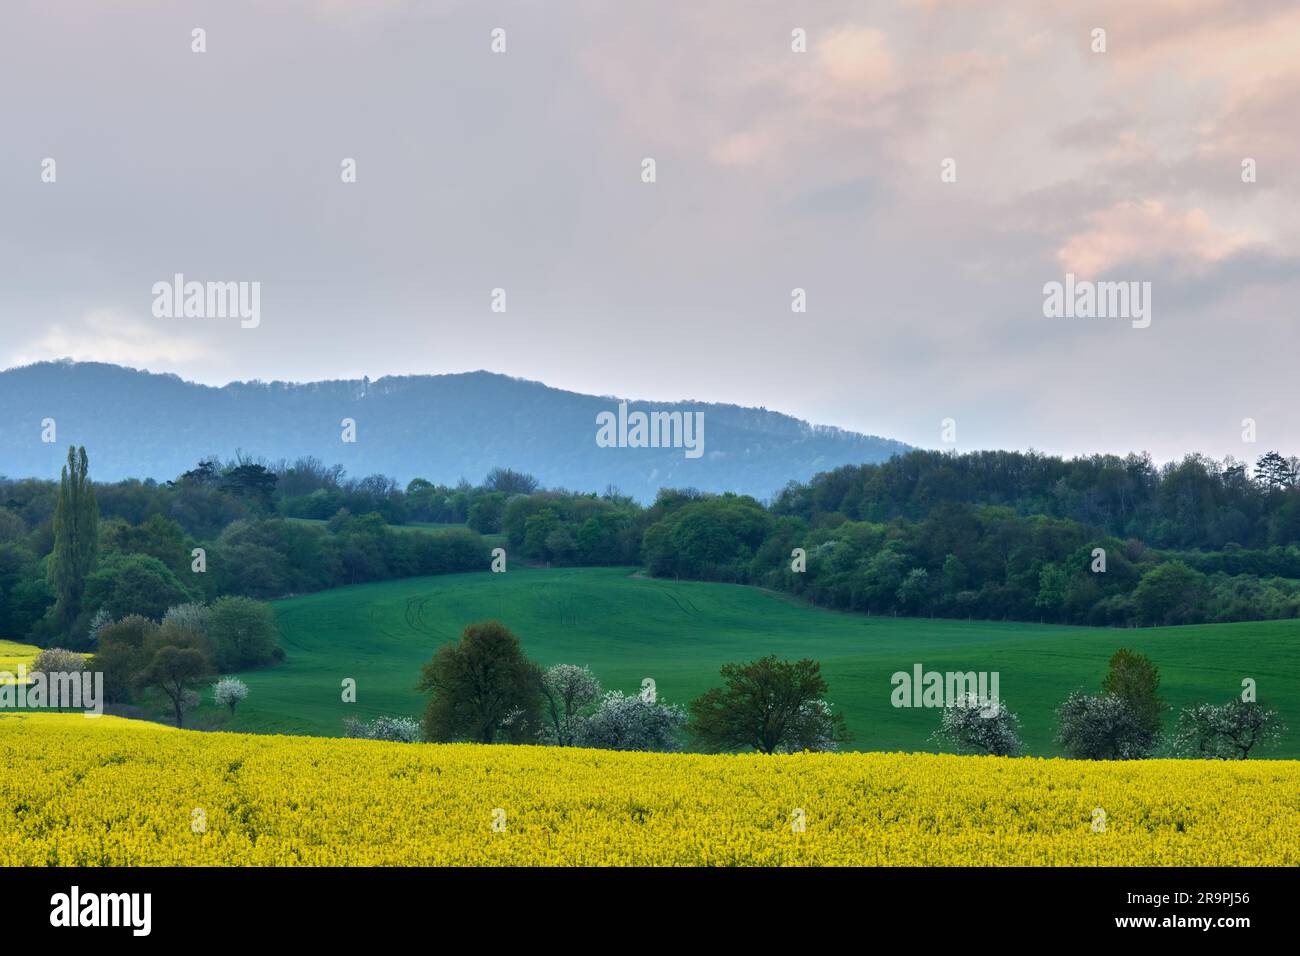 Die slowakische Landschaft im Frühling mit Raps und blühenden Bäumen bei Sonnenuntergang. Wald im Hintergrund. Chocholna, Slowakei Stockfoto